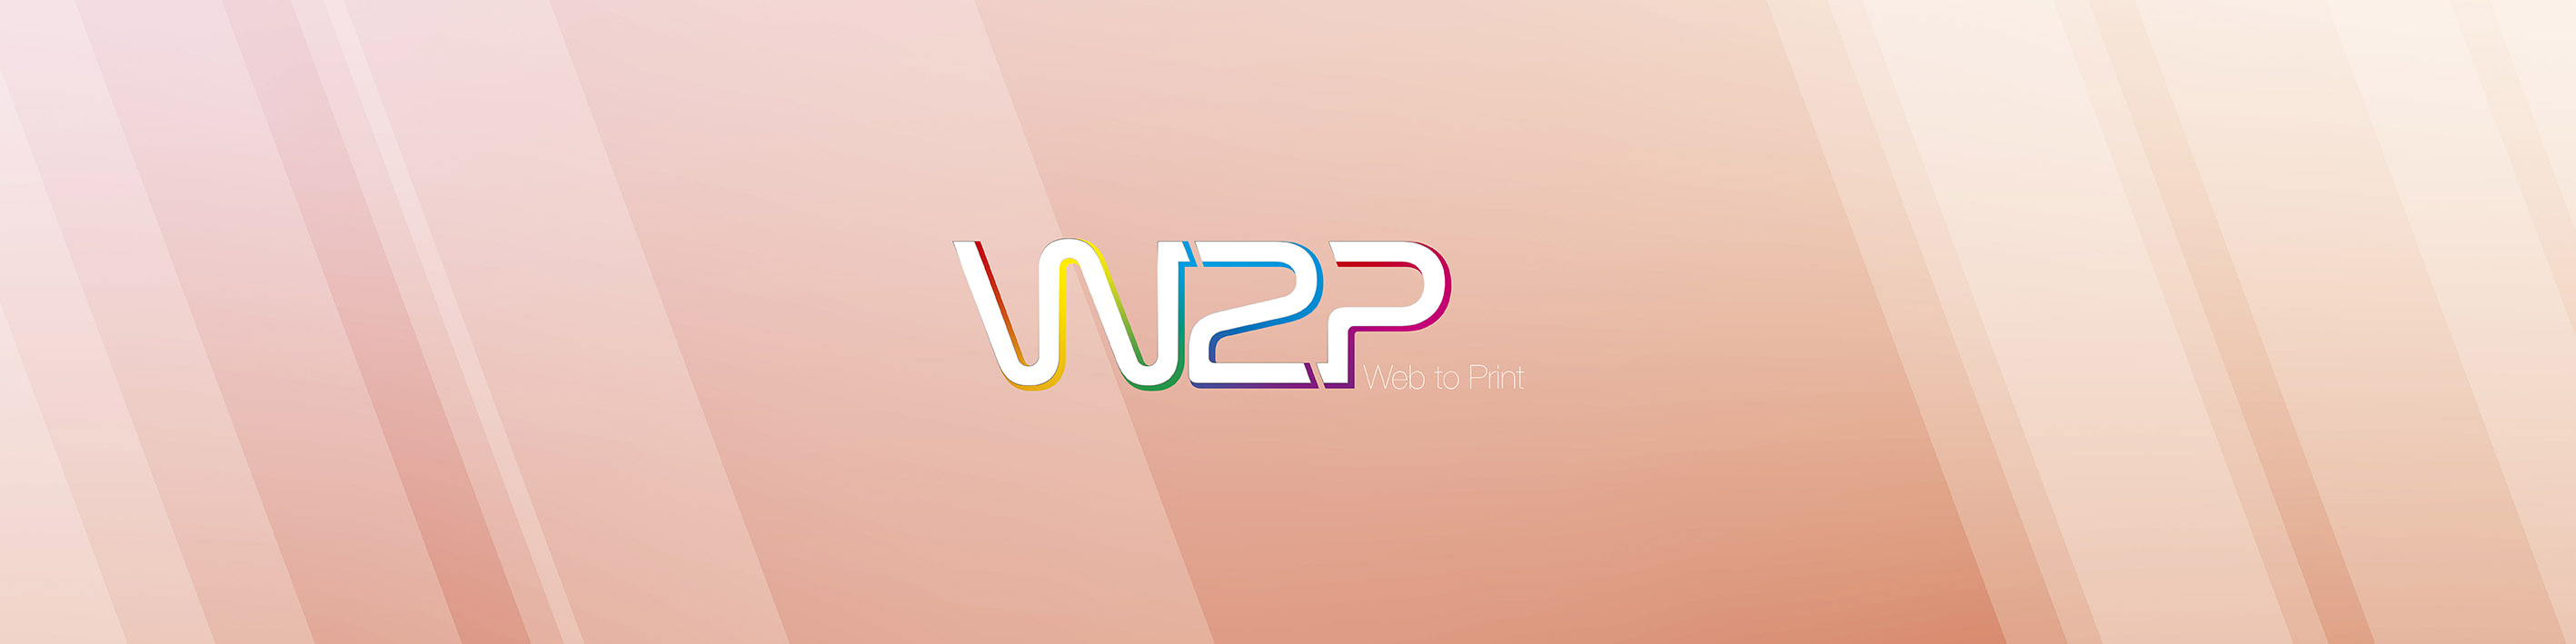 Bannière W2P - Web to Print